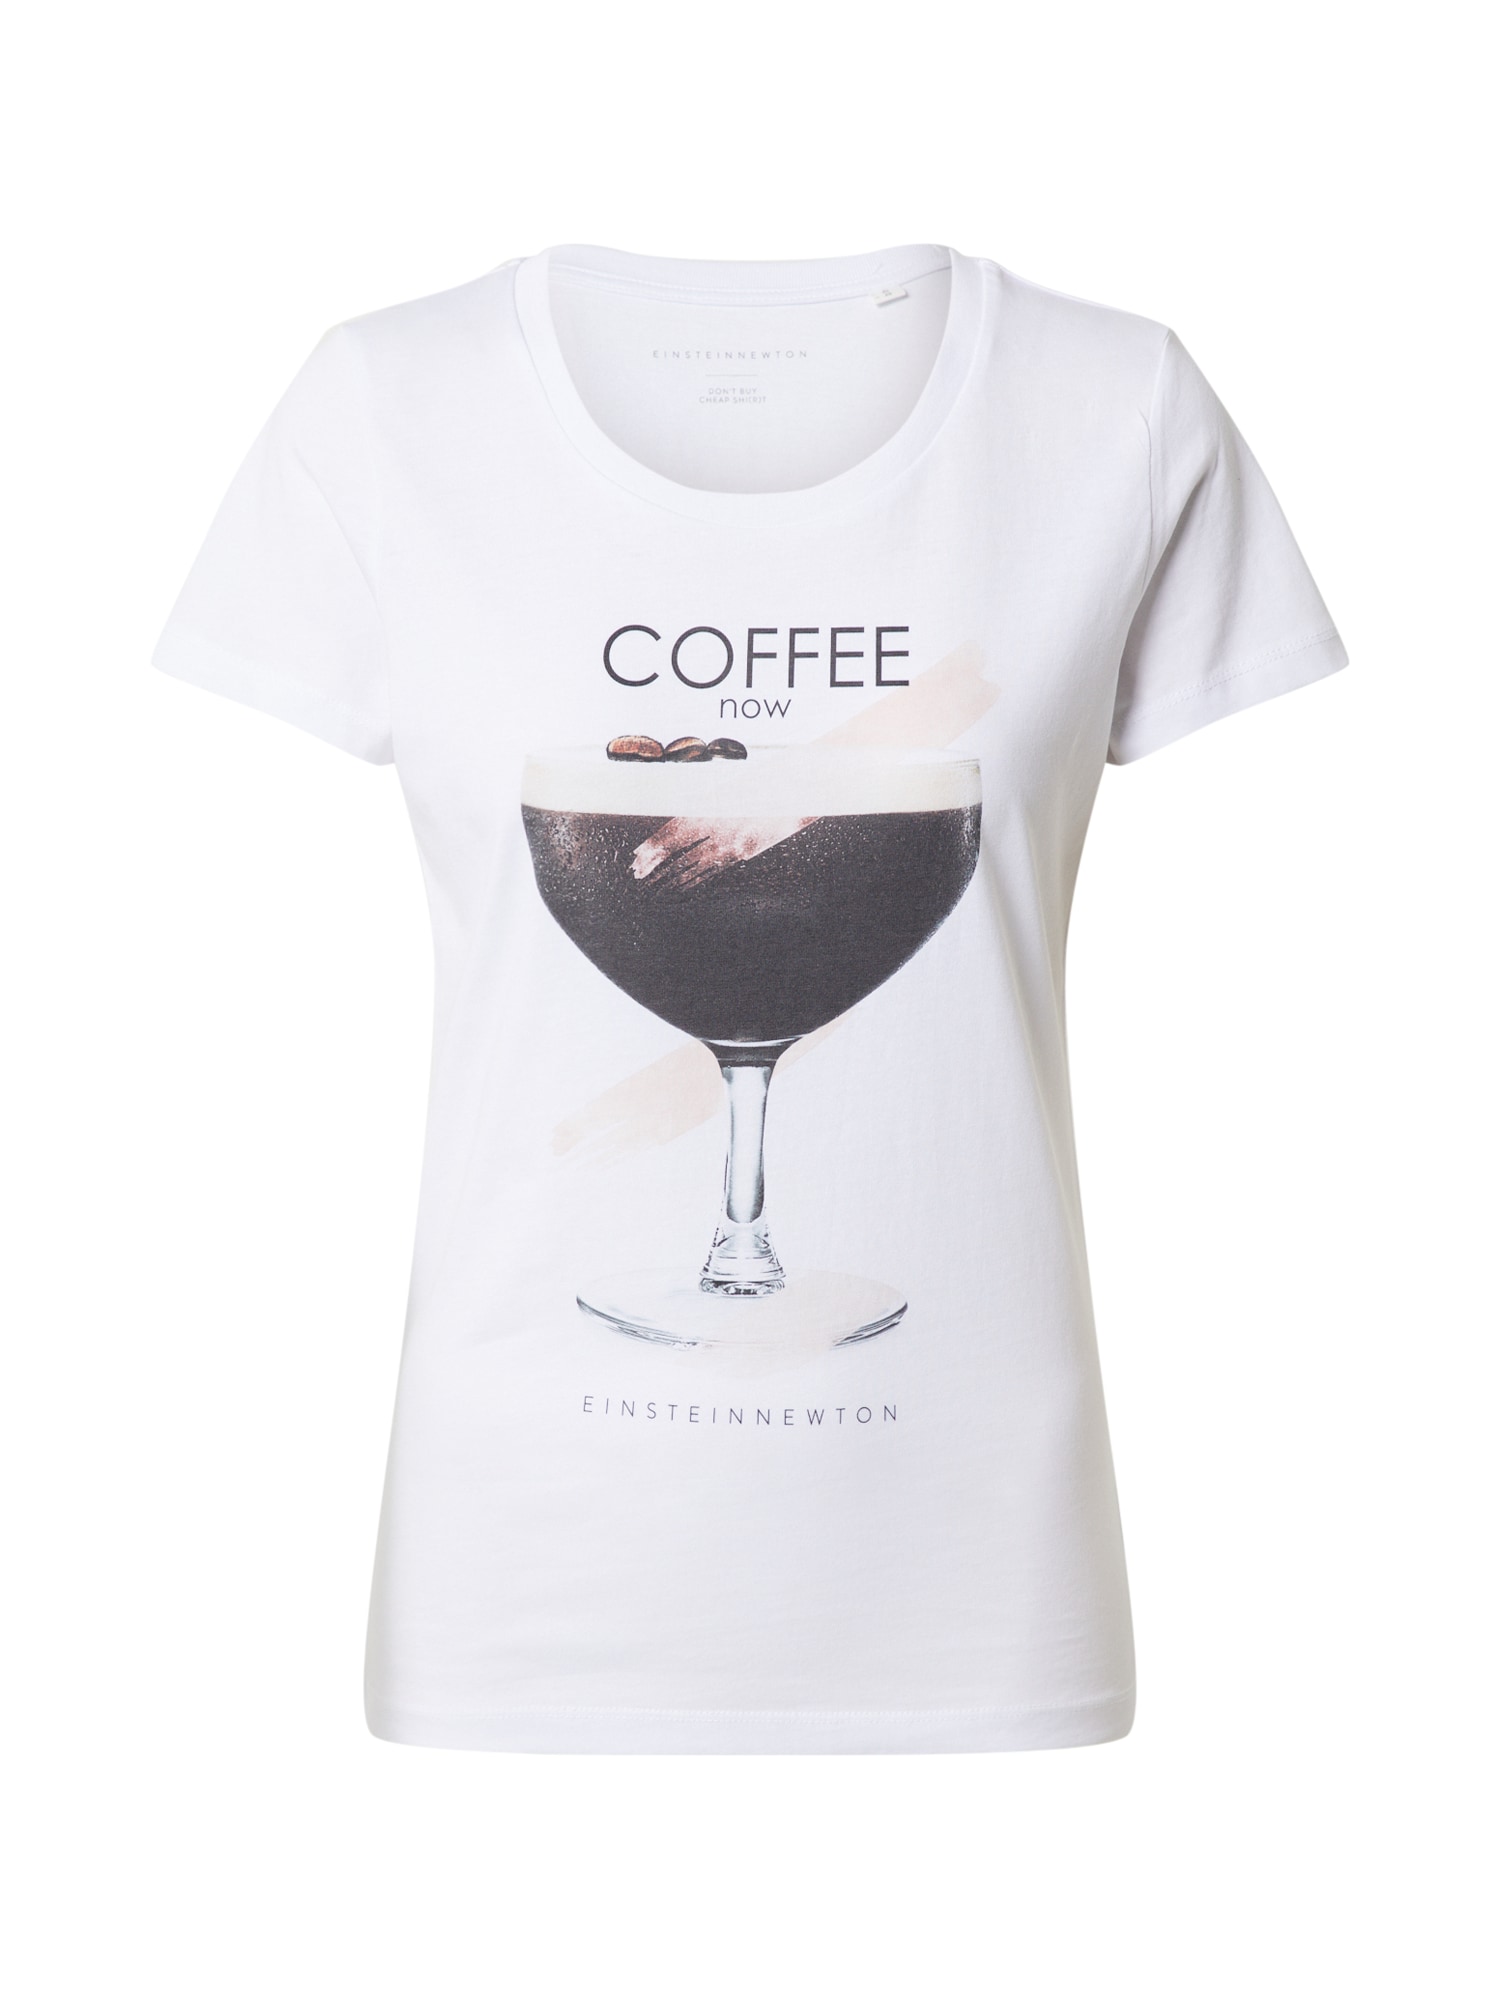 EINSTEIN & NEWTON Marškinėliai 'Coffee Now' rožių spalva / juoda / balta